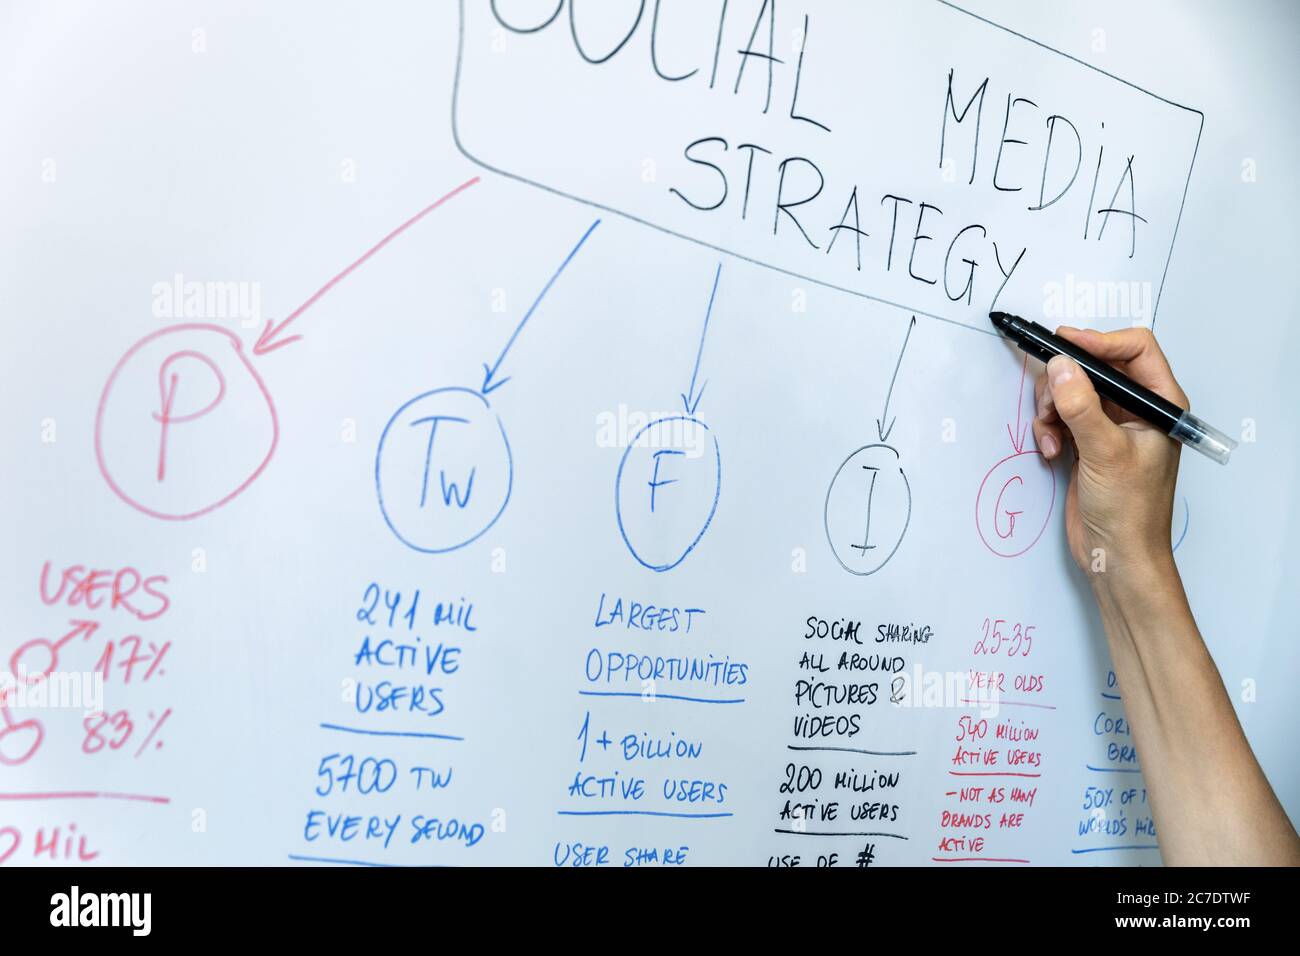 concept de marketing sur les réseaux sociaux et les influenceurs - plan de stratégie de dessin manuel sur tableau blanc Banque D'Images